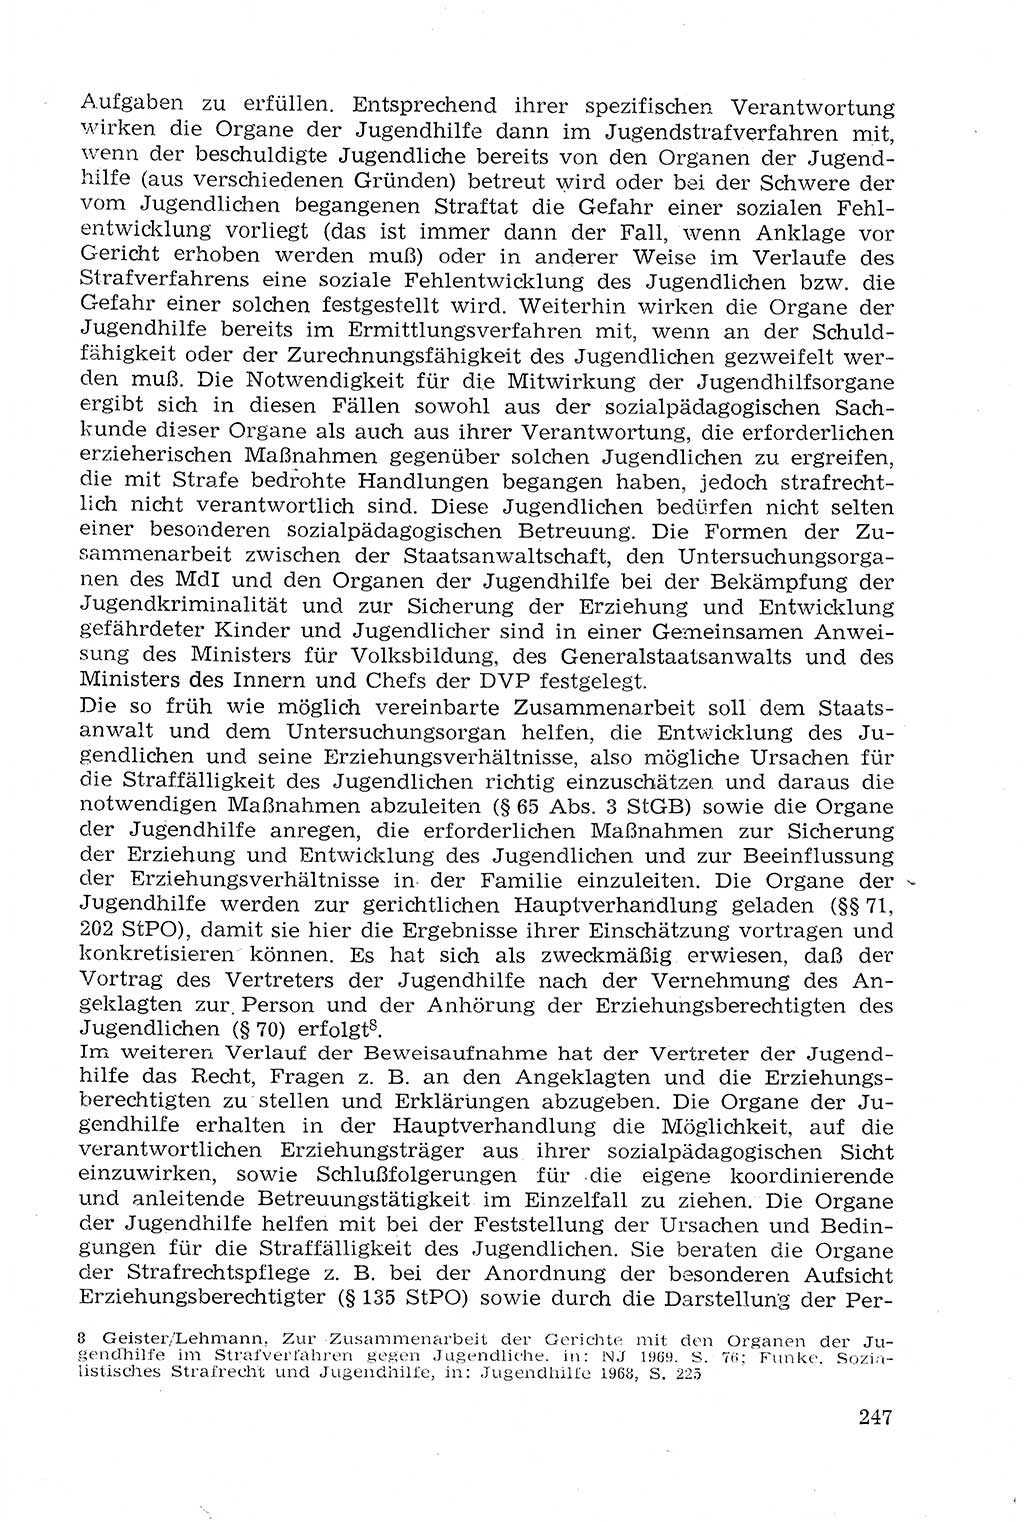 Strafprozeßrecht der DDR (Deutsche Demokratische Republik), Lehrmaterial 1969, Seite 247 (Strafprozeßr. DDR Lehrmat. 1969, S. 247)